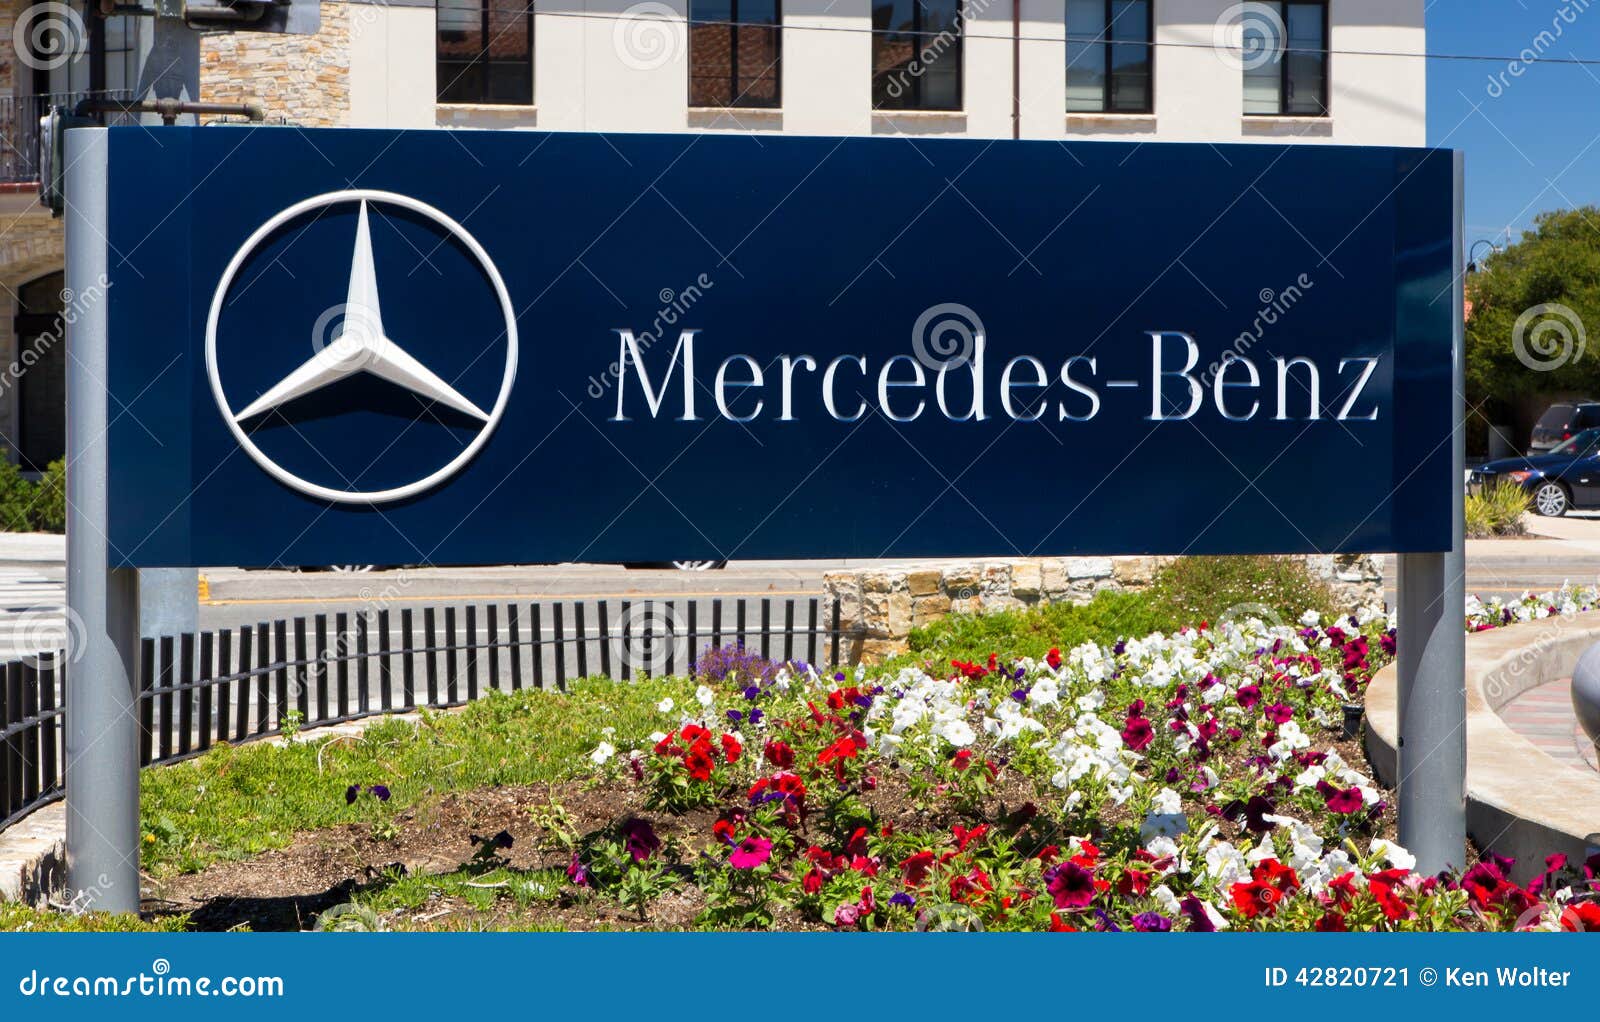 Mercedes Benz Automobile Dealership Sign Redaktionelles Foto Bild Von Zeichen Reflexion 42820721